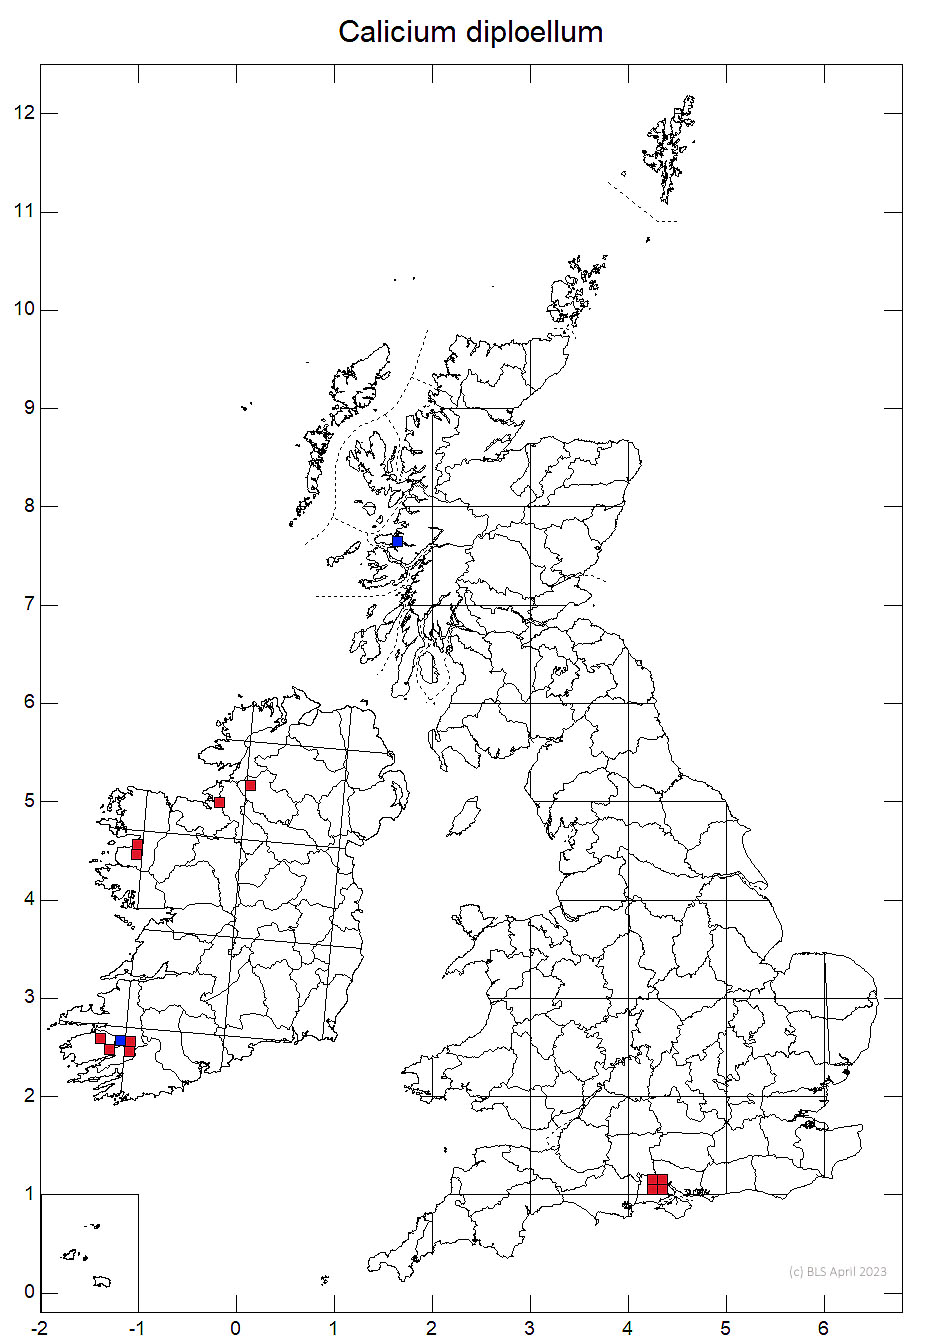 Calicium diploellum 10km sq distribution map